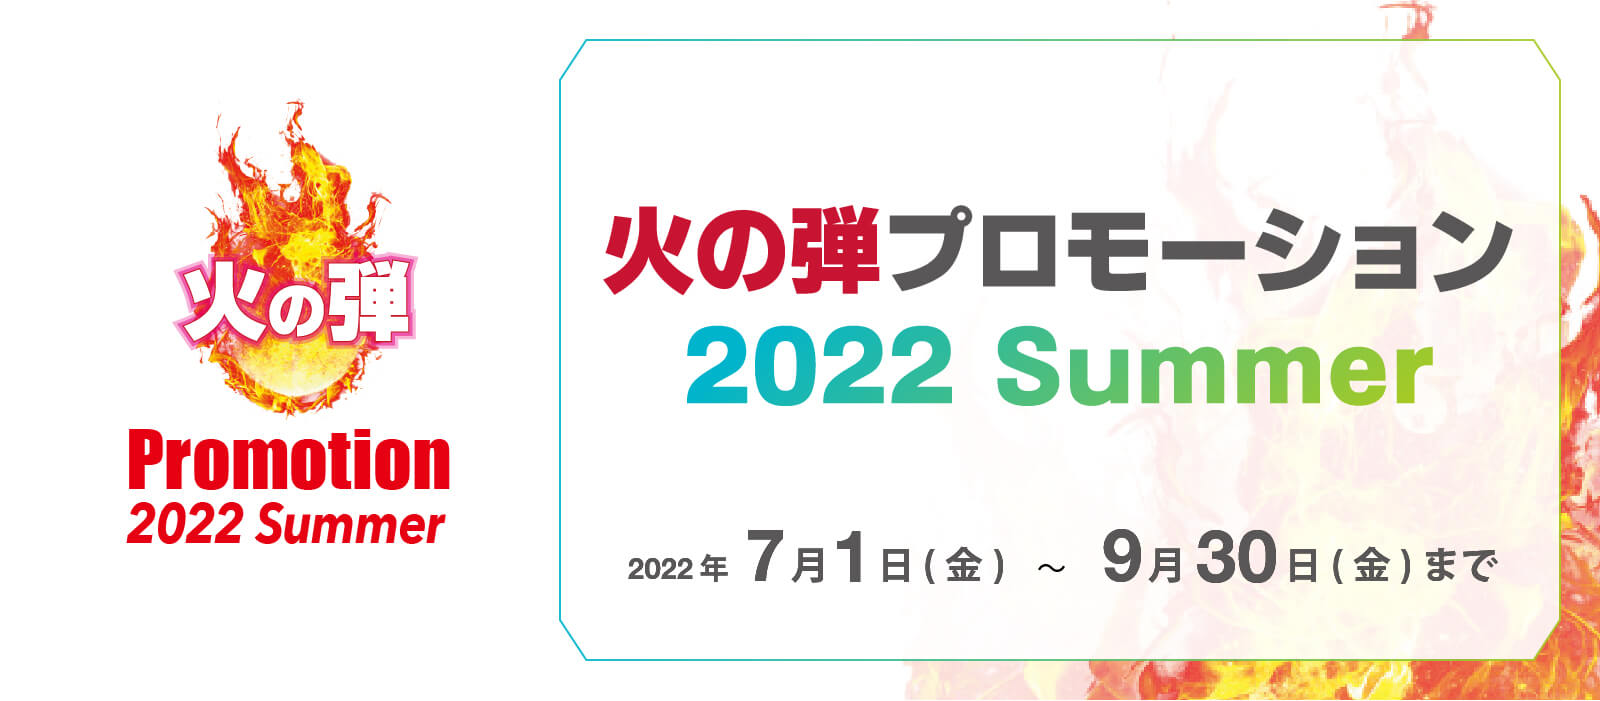 火の玉プロモーション 2022 Summer 2022年7月1日（金）〜9月30日（金）まで